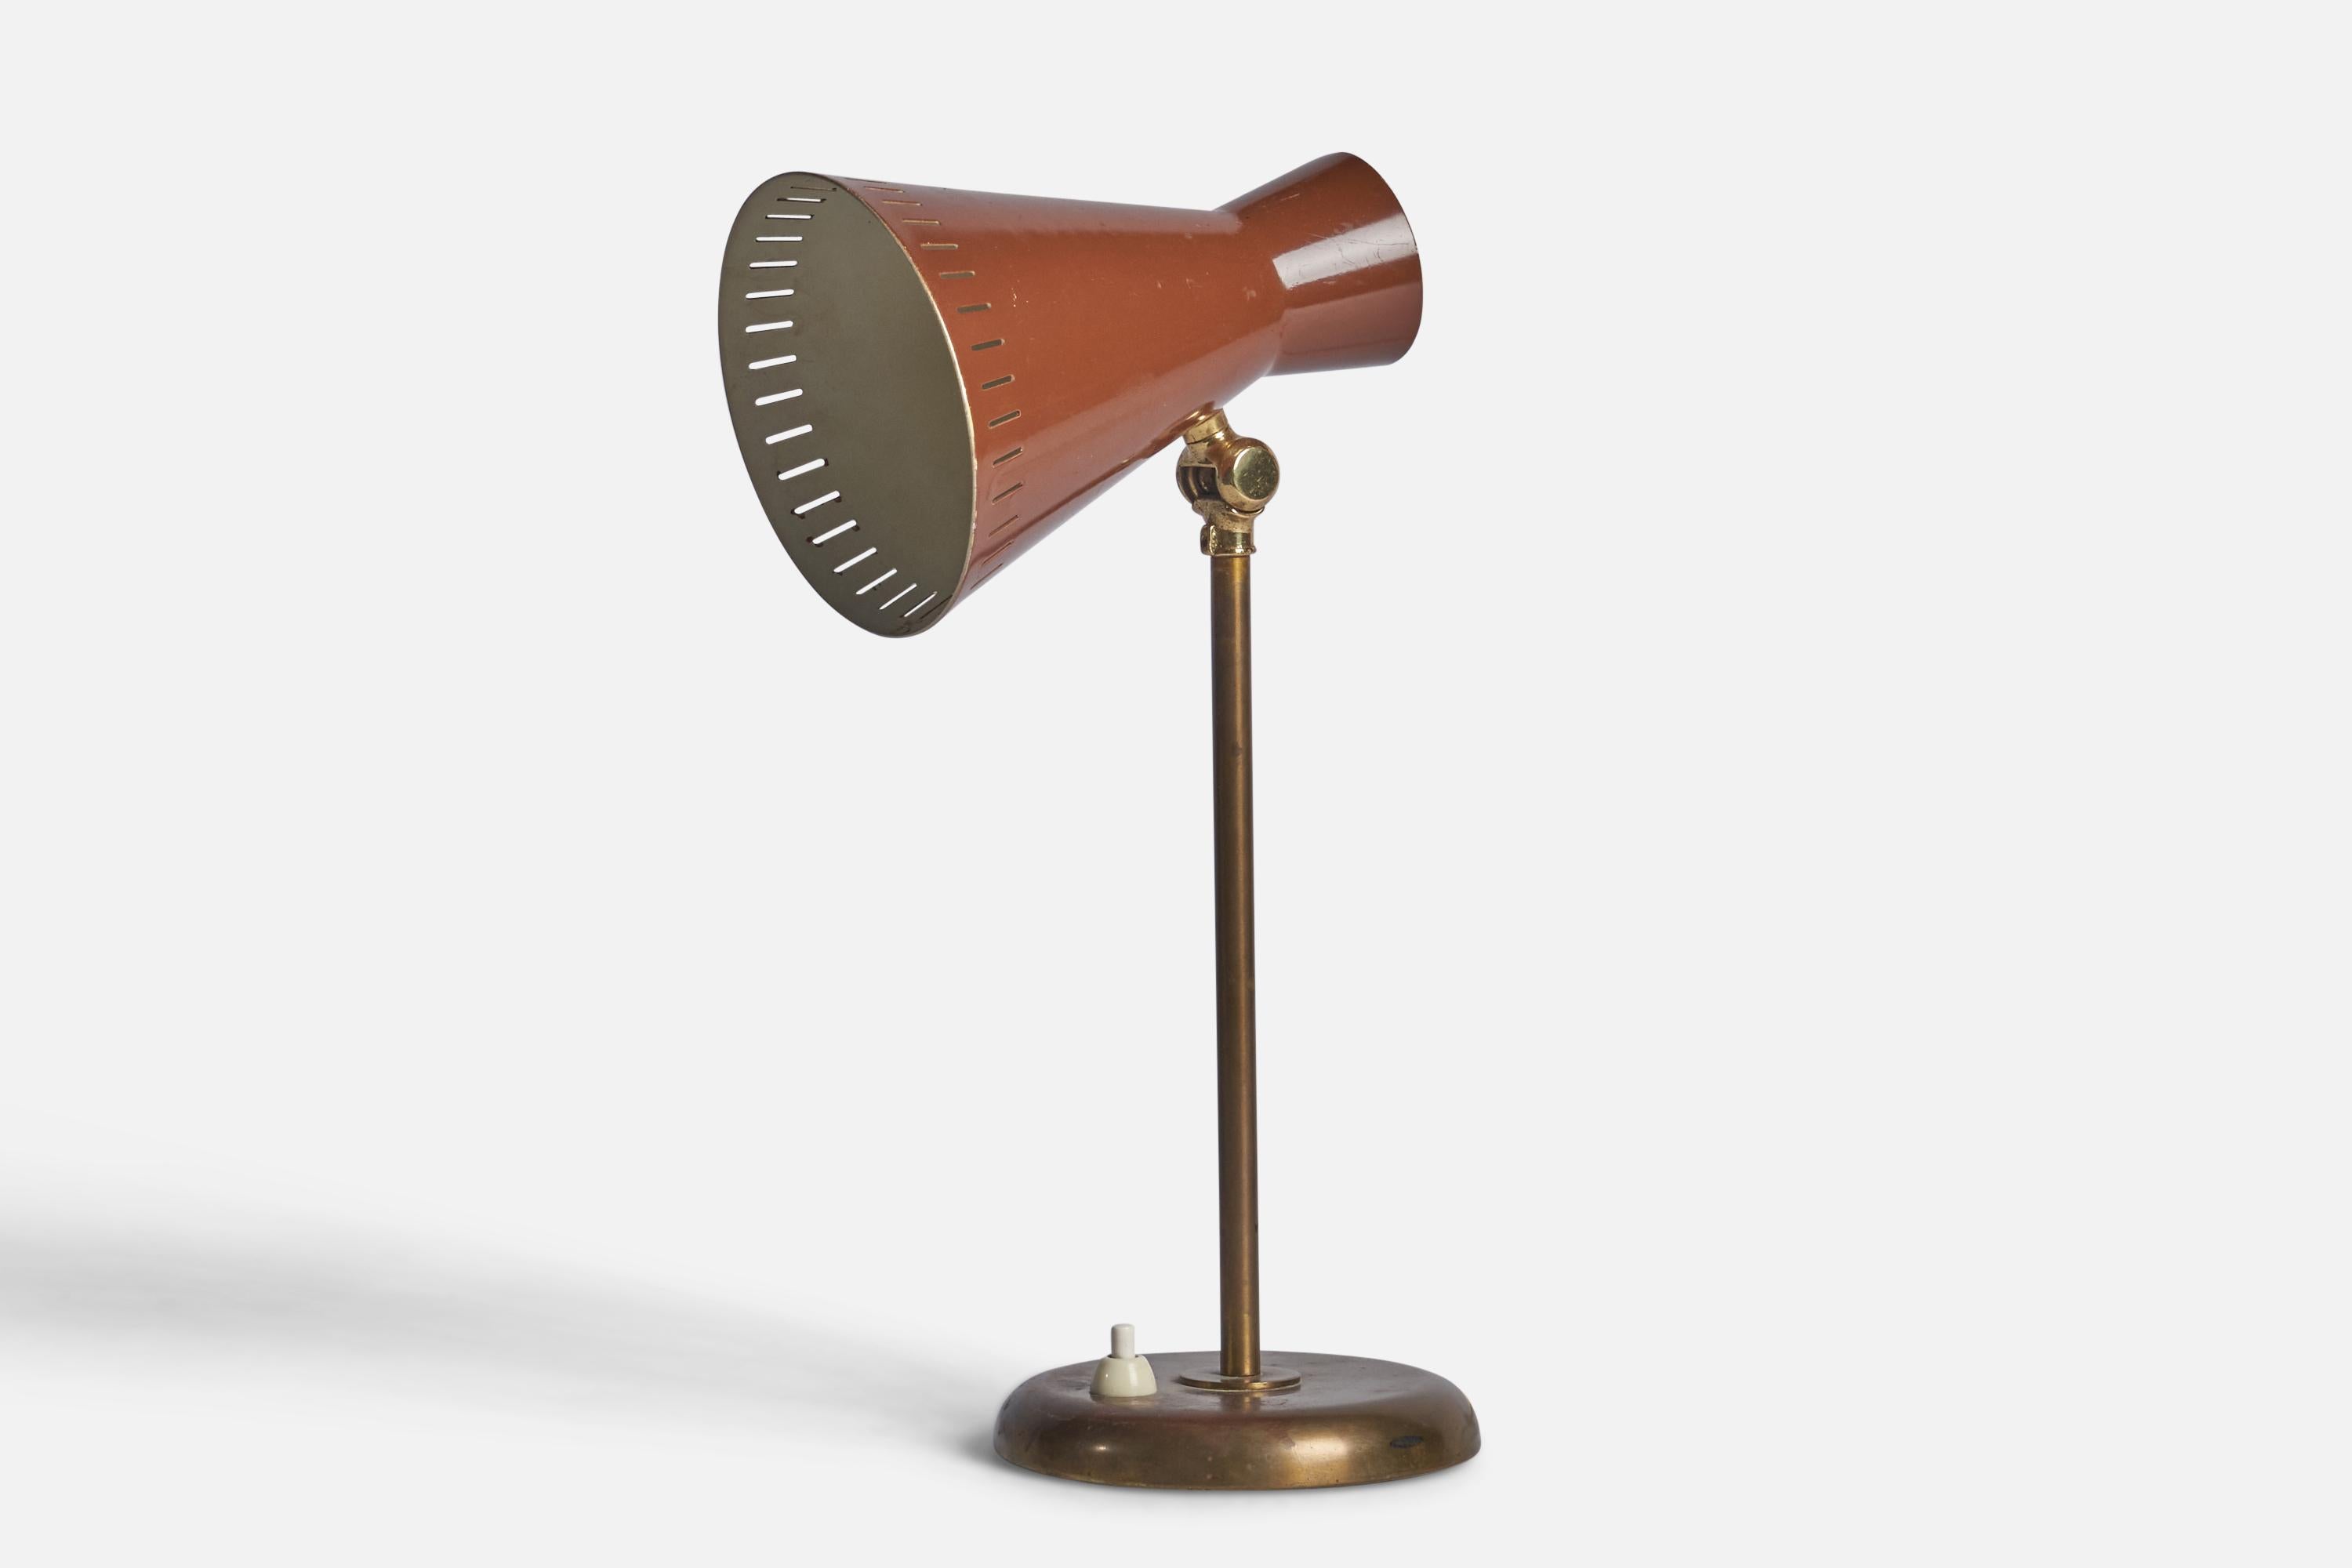 Lampe de table réglable en laiton et métal laqué orange, conçue et produite par Böhlmarks, Suède, vers les années 1940.
Dimensions totales (pouces) : 13,5